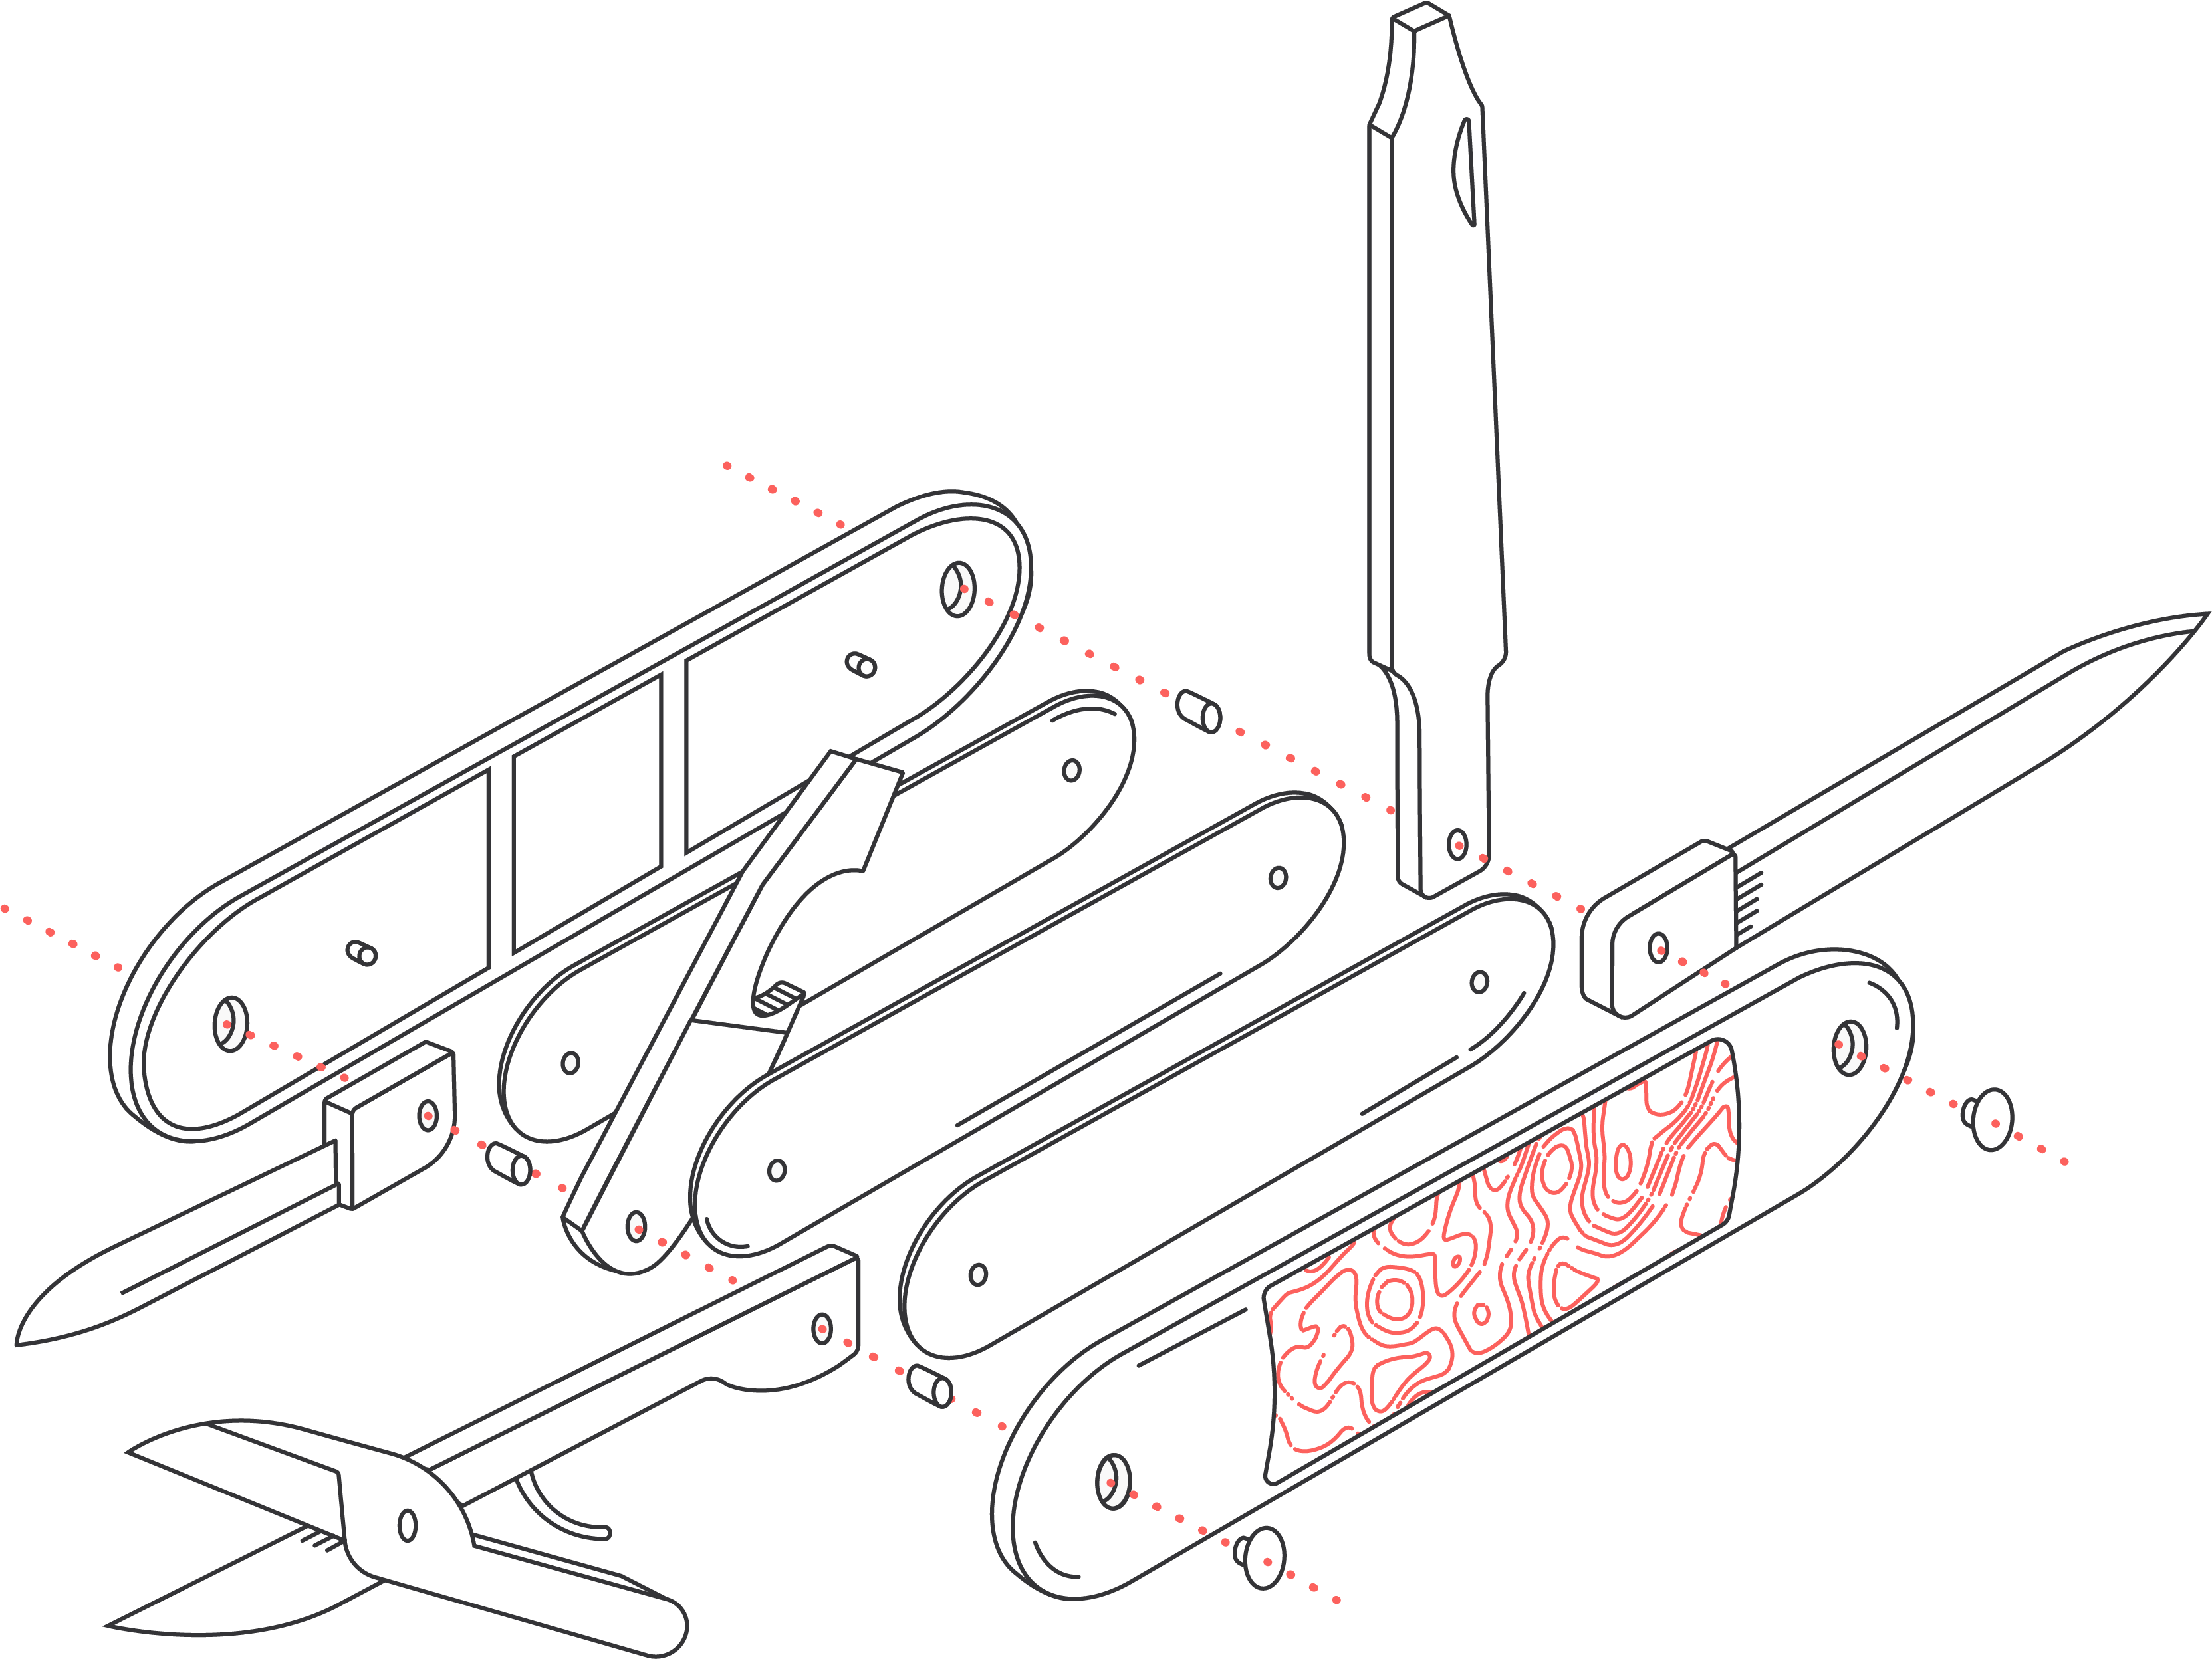 Design system pocket knife illustration